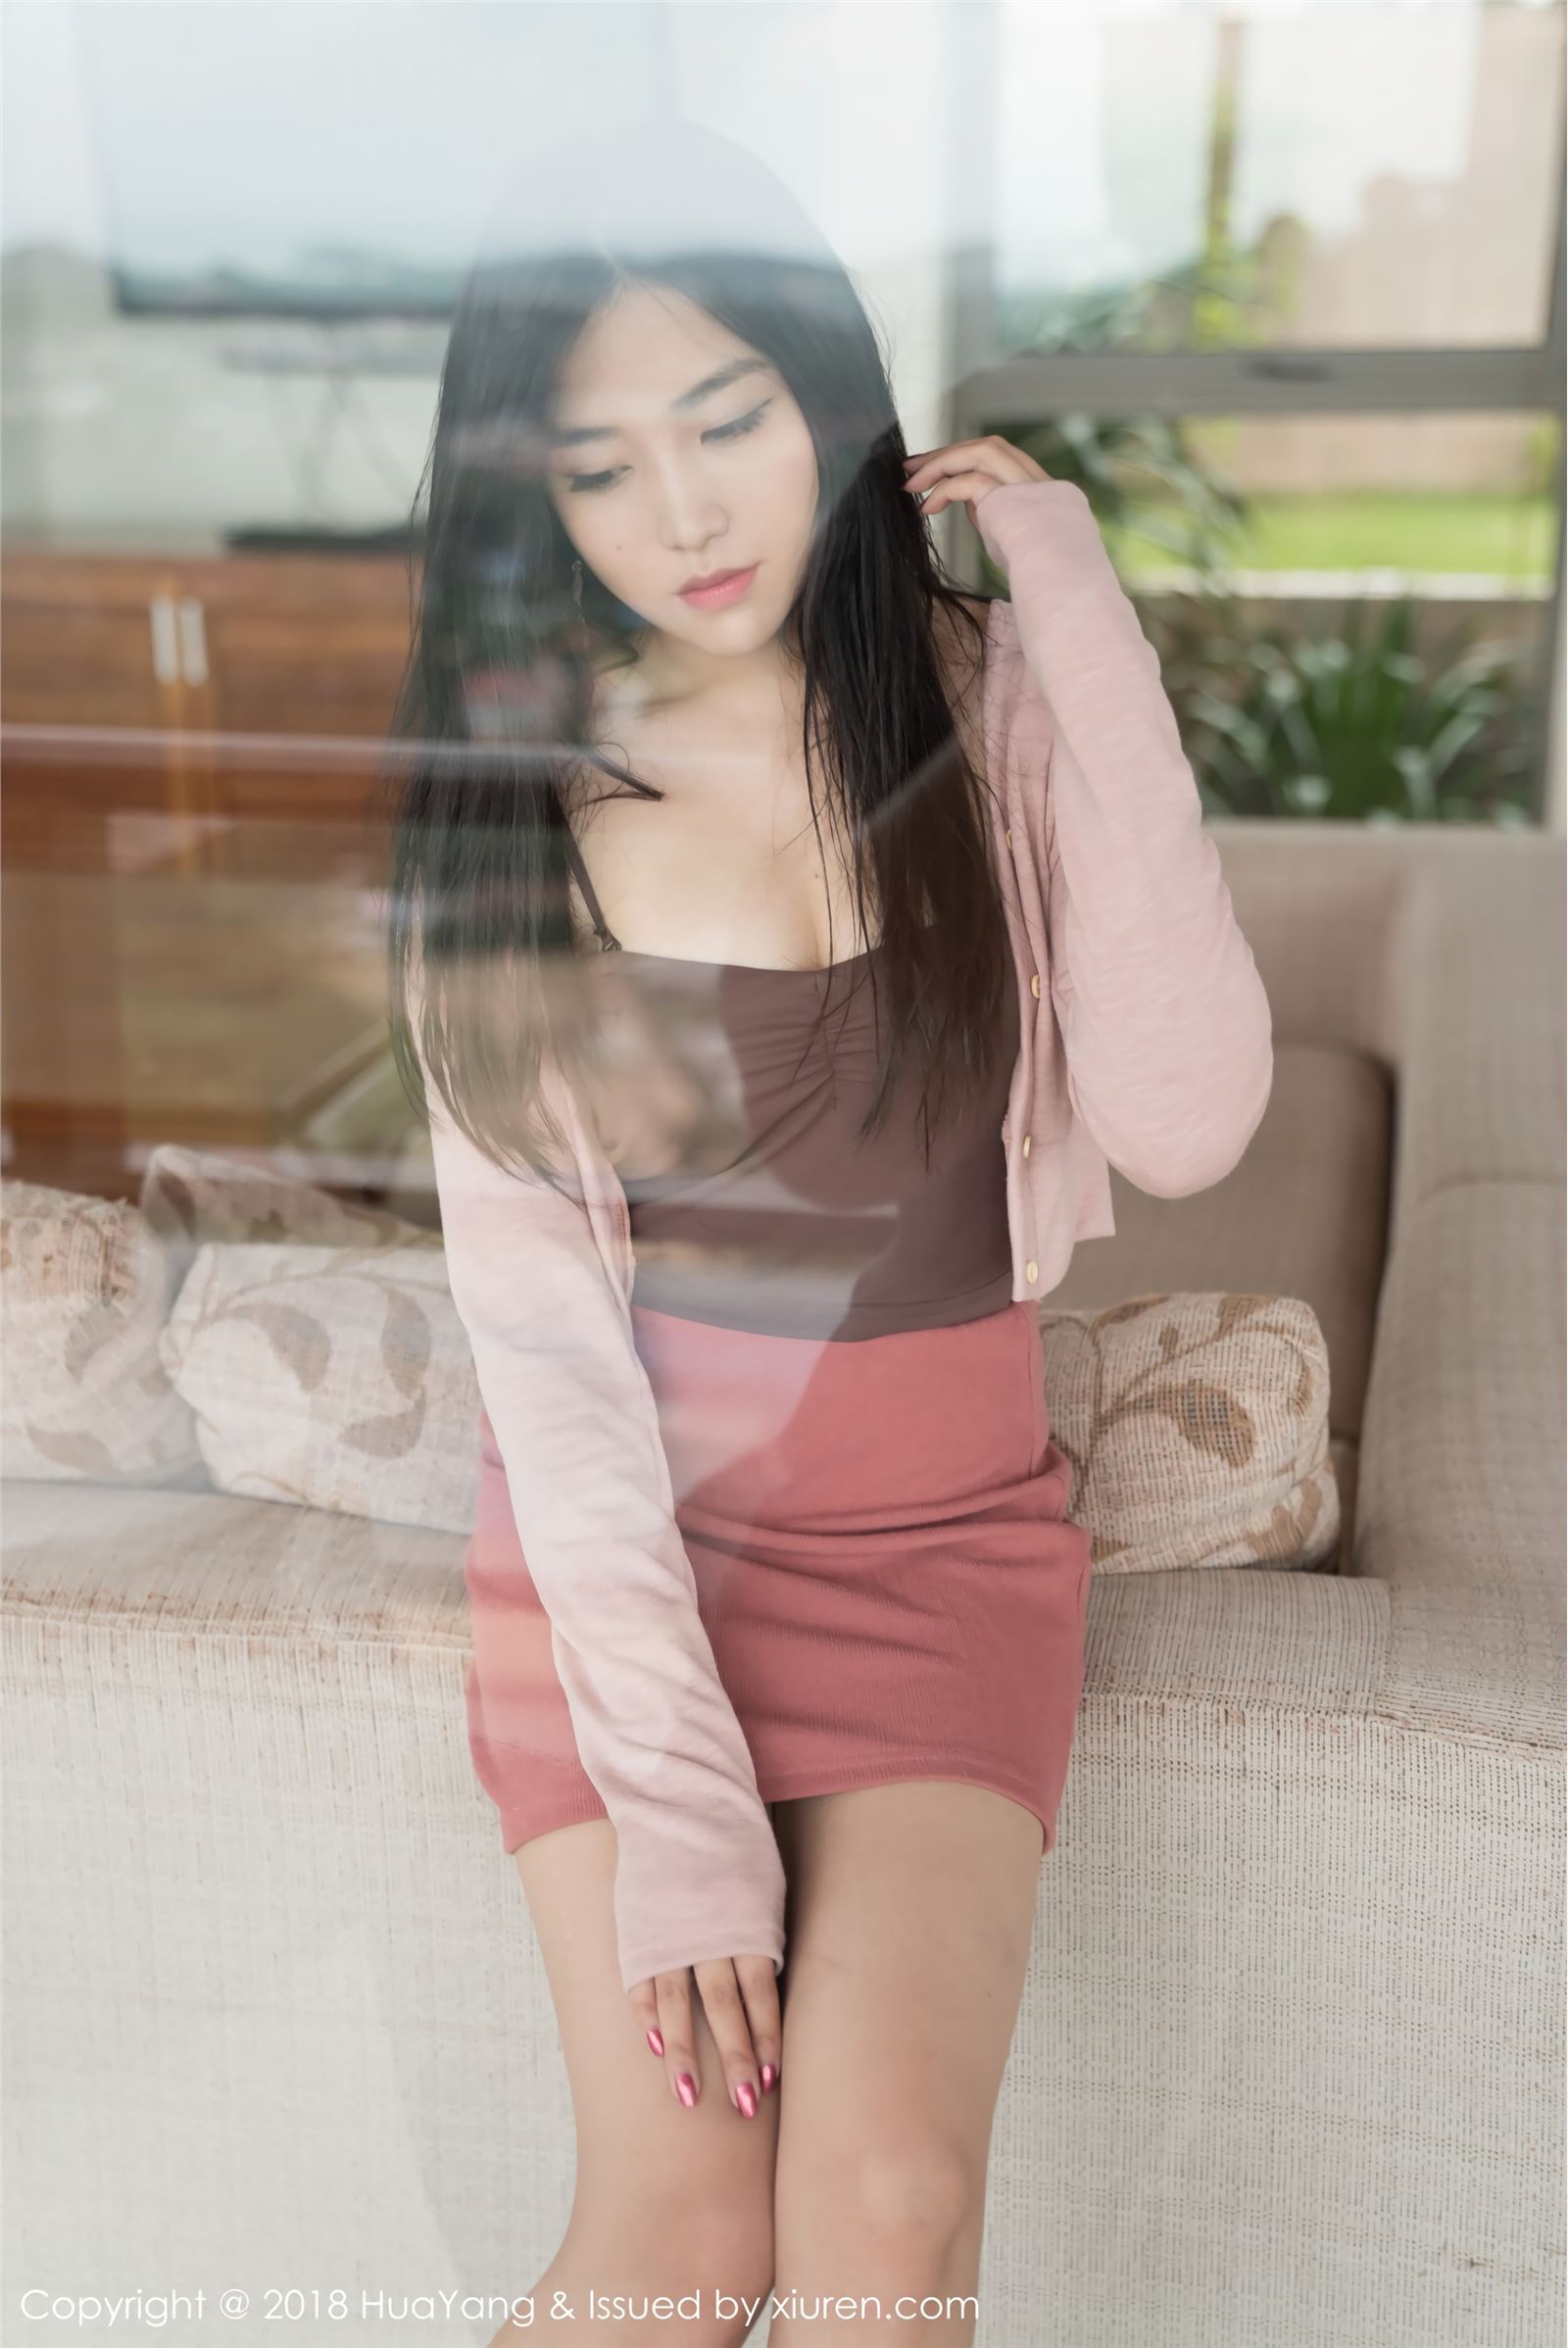 [Hua Yang] Hua Yang show photo 2018.02.07 vol.029 very attractive promise Sabrina